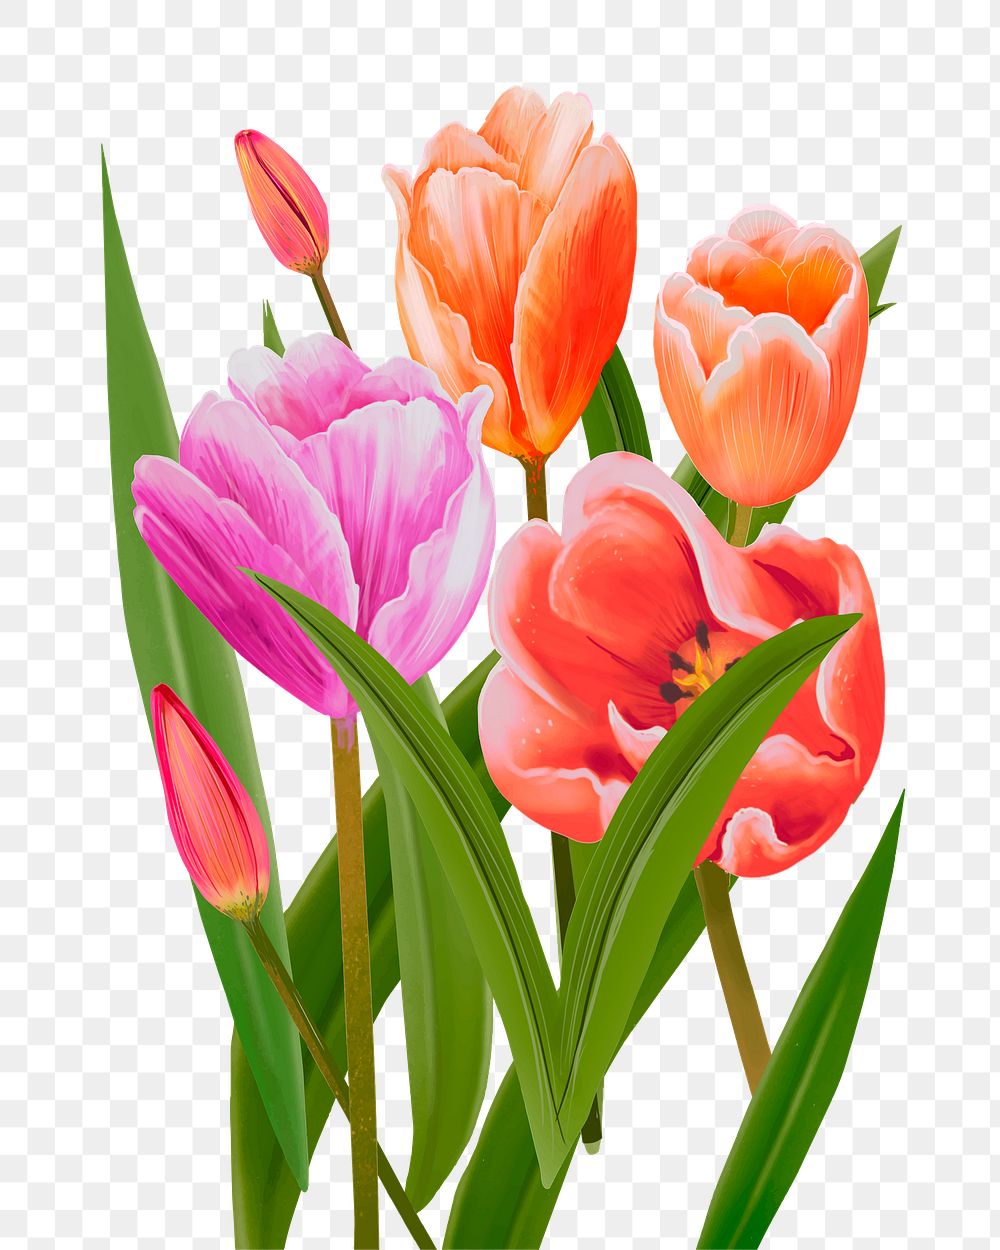 Tulips png flower sticker illustration, transparent background